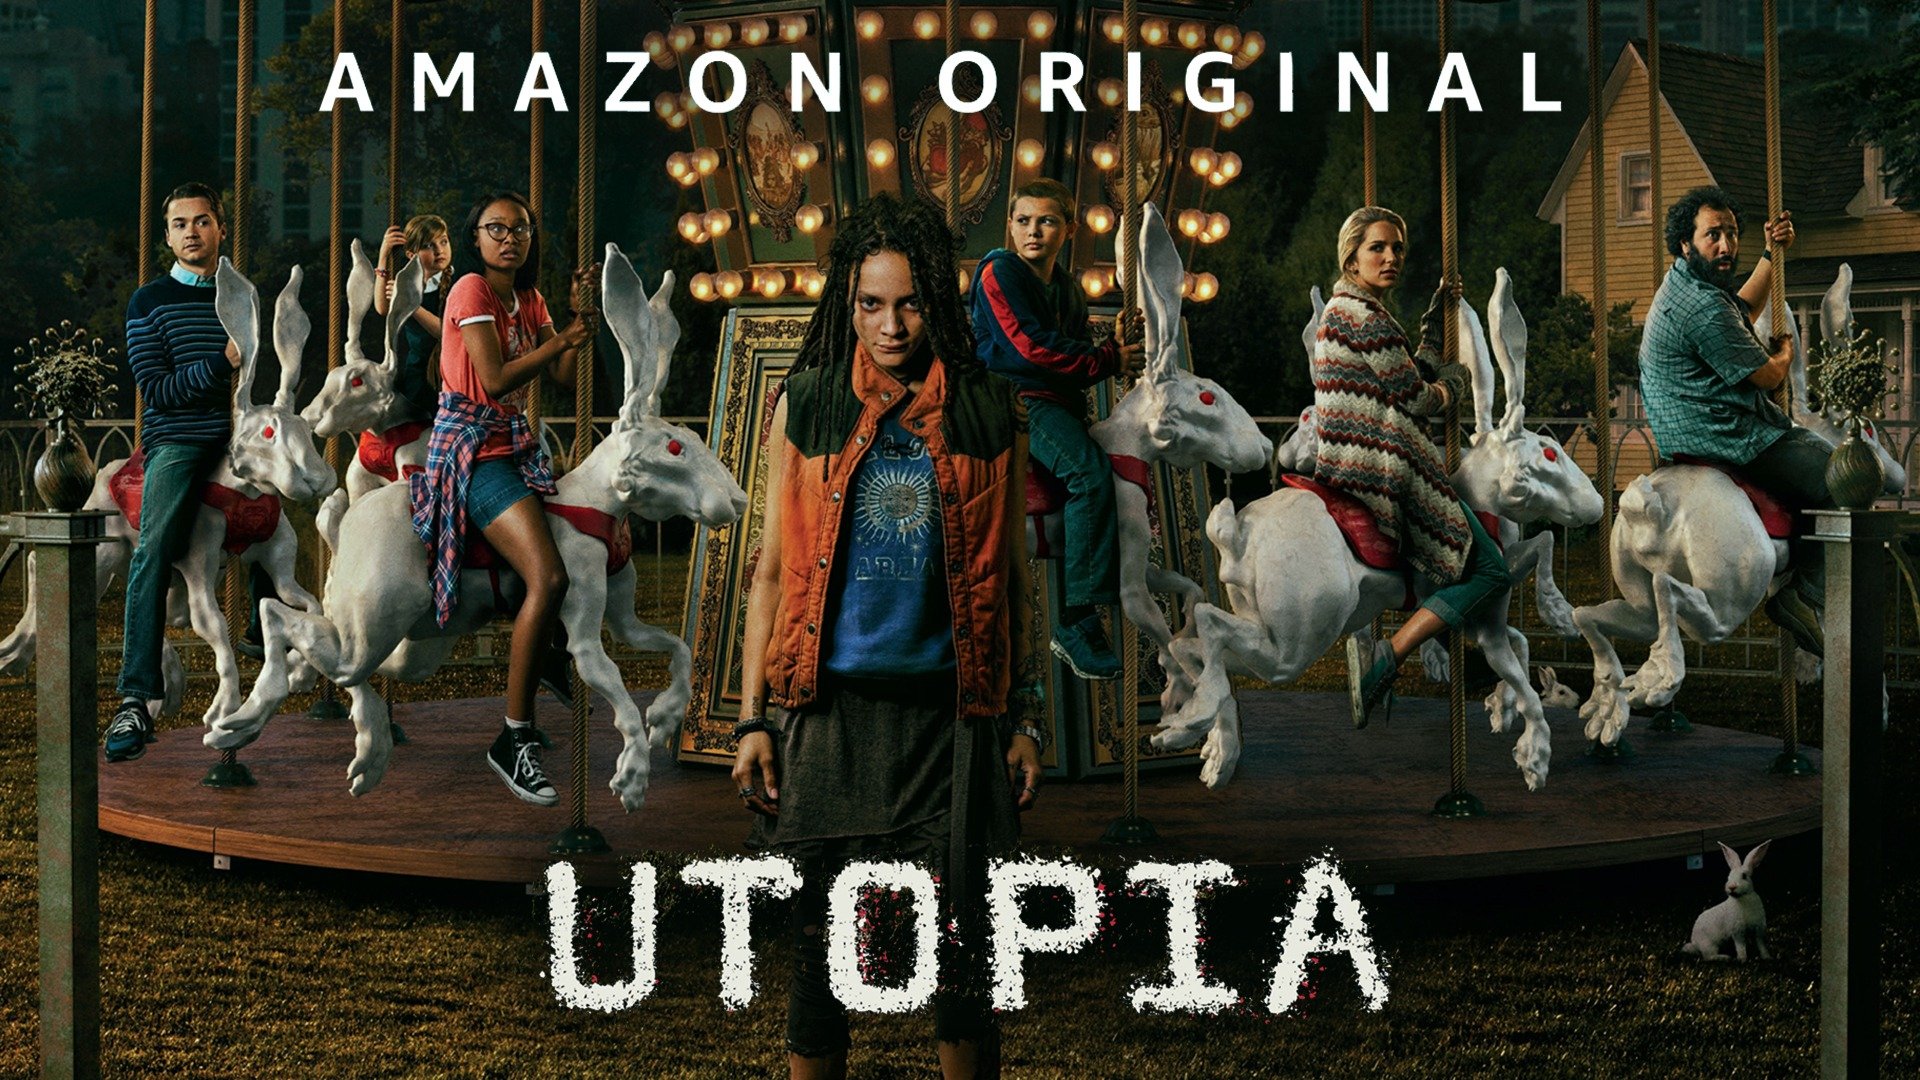 Amazon Utopia Wallpapers